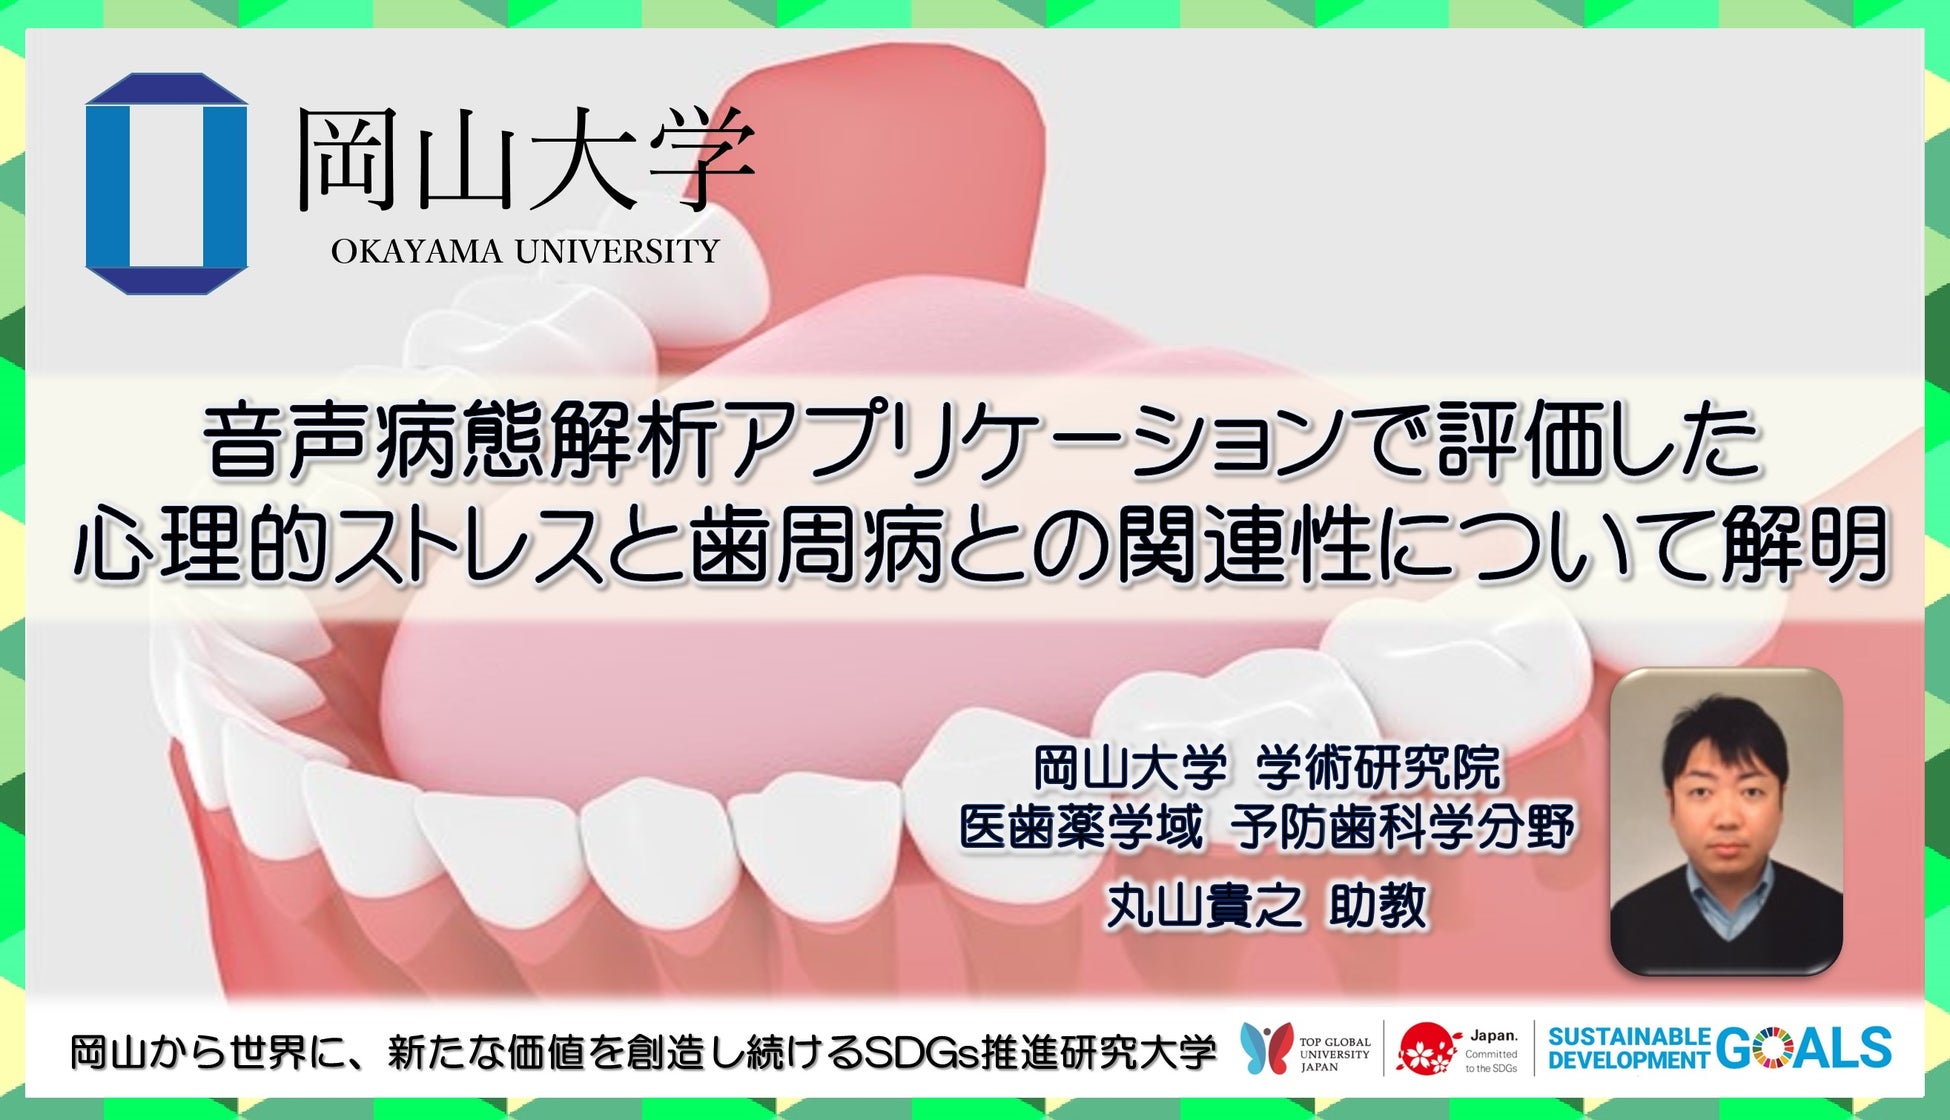 【岡山大学】音声病態解析アプリケーションで評価した心理的ストレスと歯周病との関連性について解明